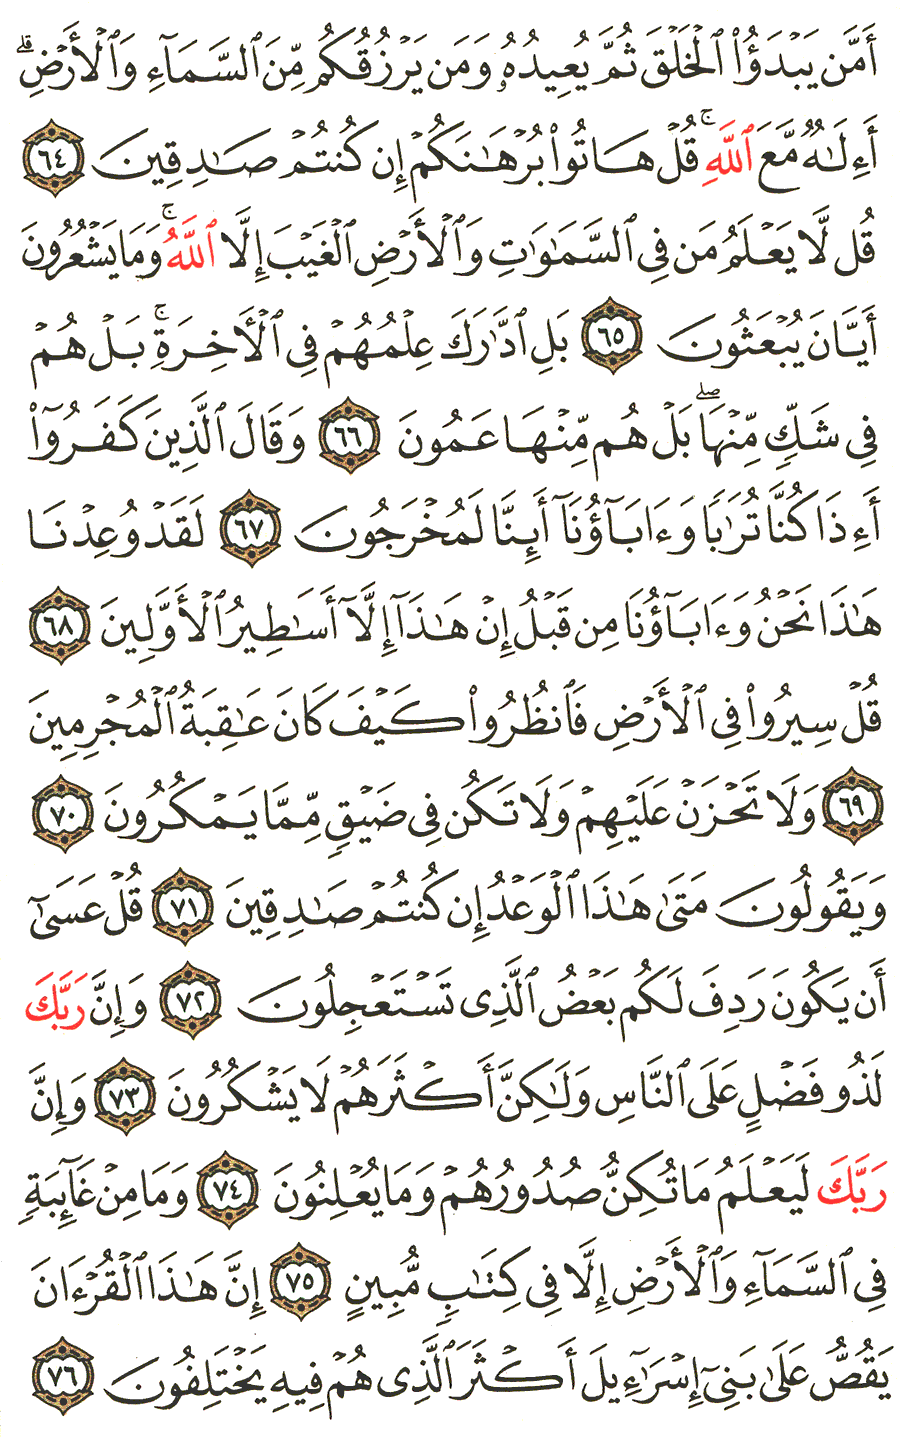 الصفحة رقم 383  من القرآن الكريم مكتوبة من المصحف